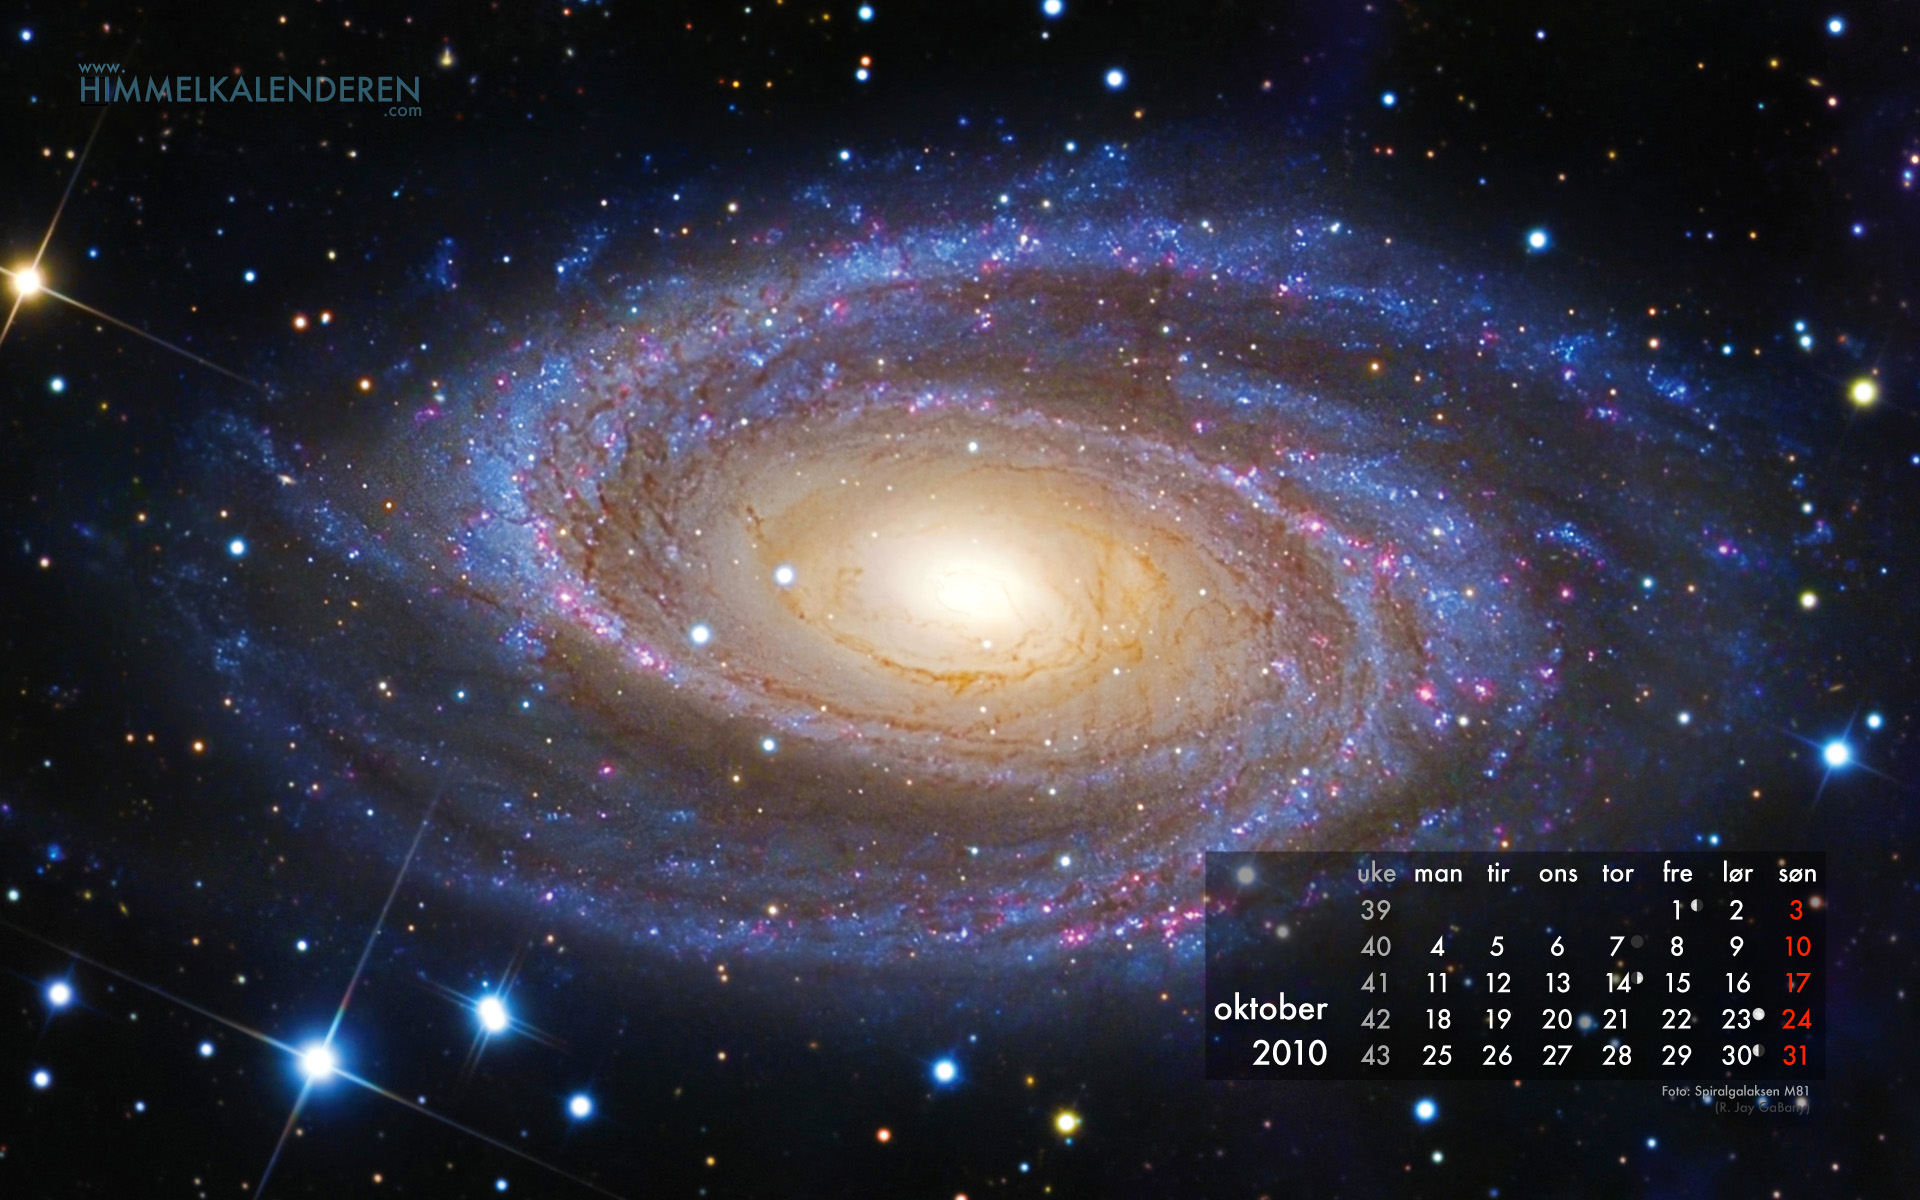 Движение звезд в млечном пути. Галактика Млечный путь телескоп Хаббл. Галактика Млечный путь Солнечная система. Космос звезды. Вселенная наша Галактика.